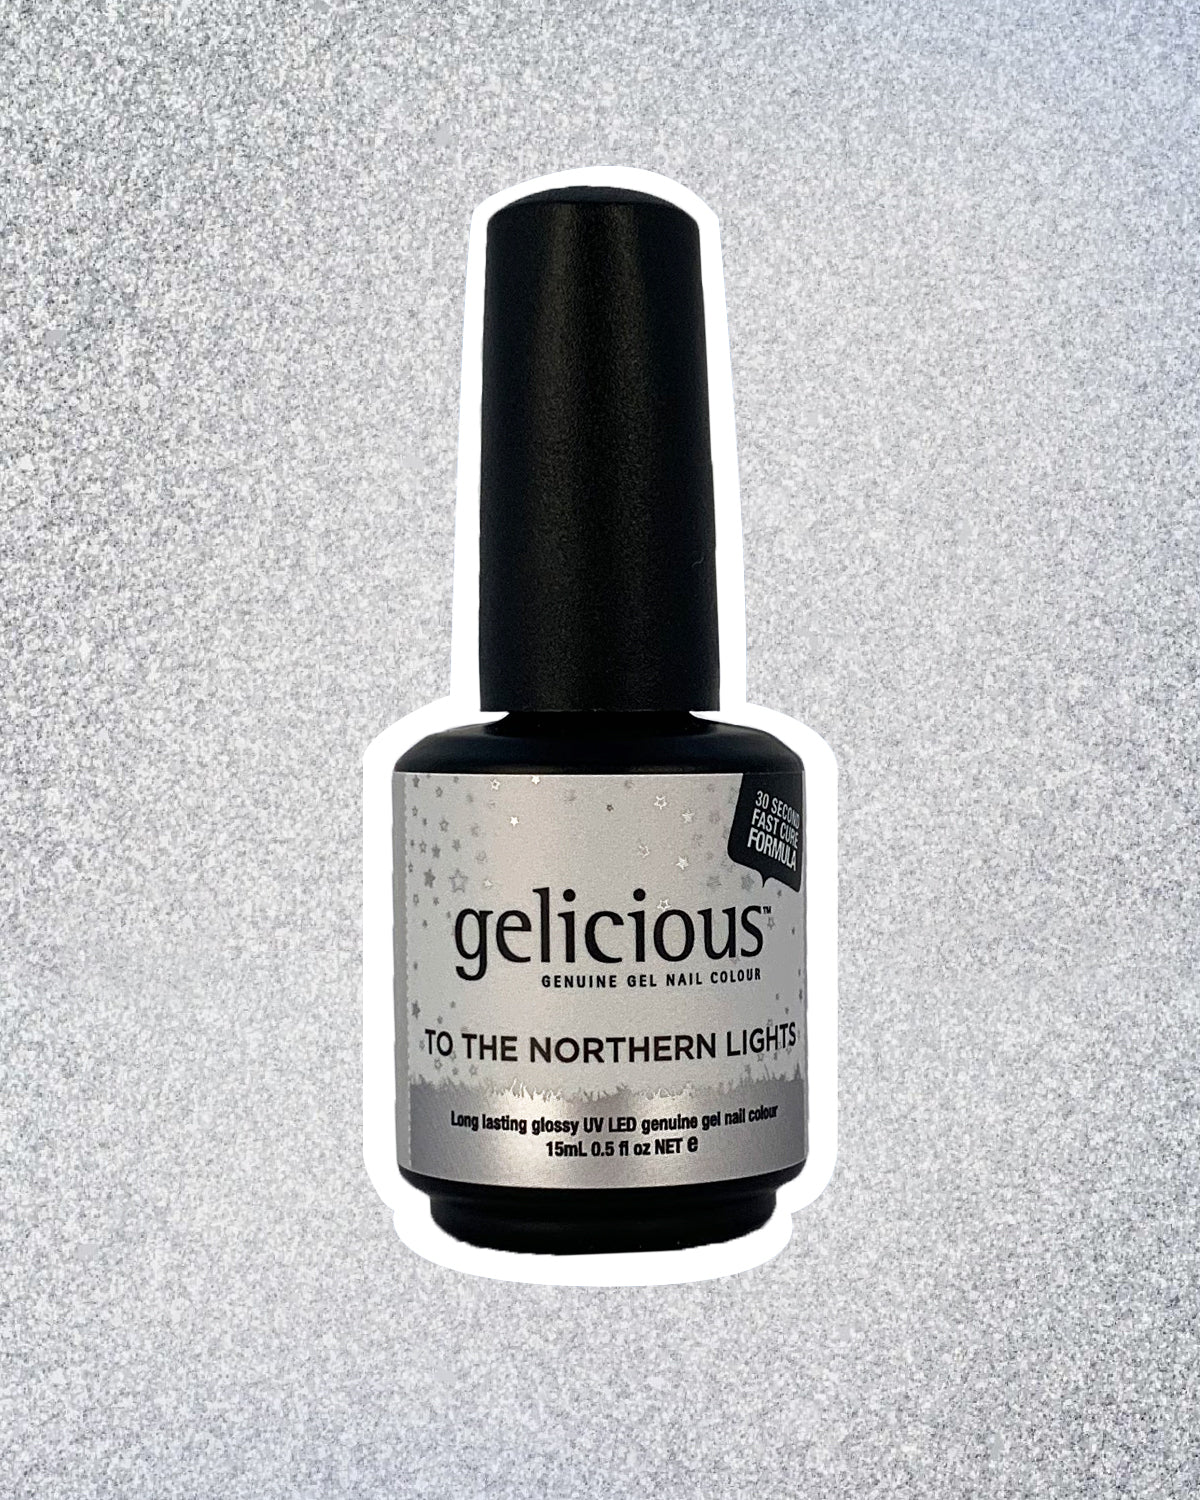 Gelicious Peel-Off Gel Nail Best Selling Starter Kit